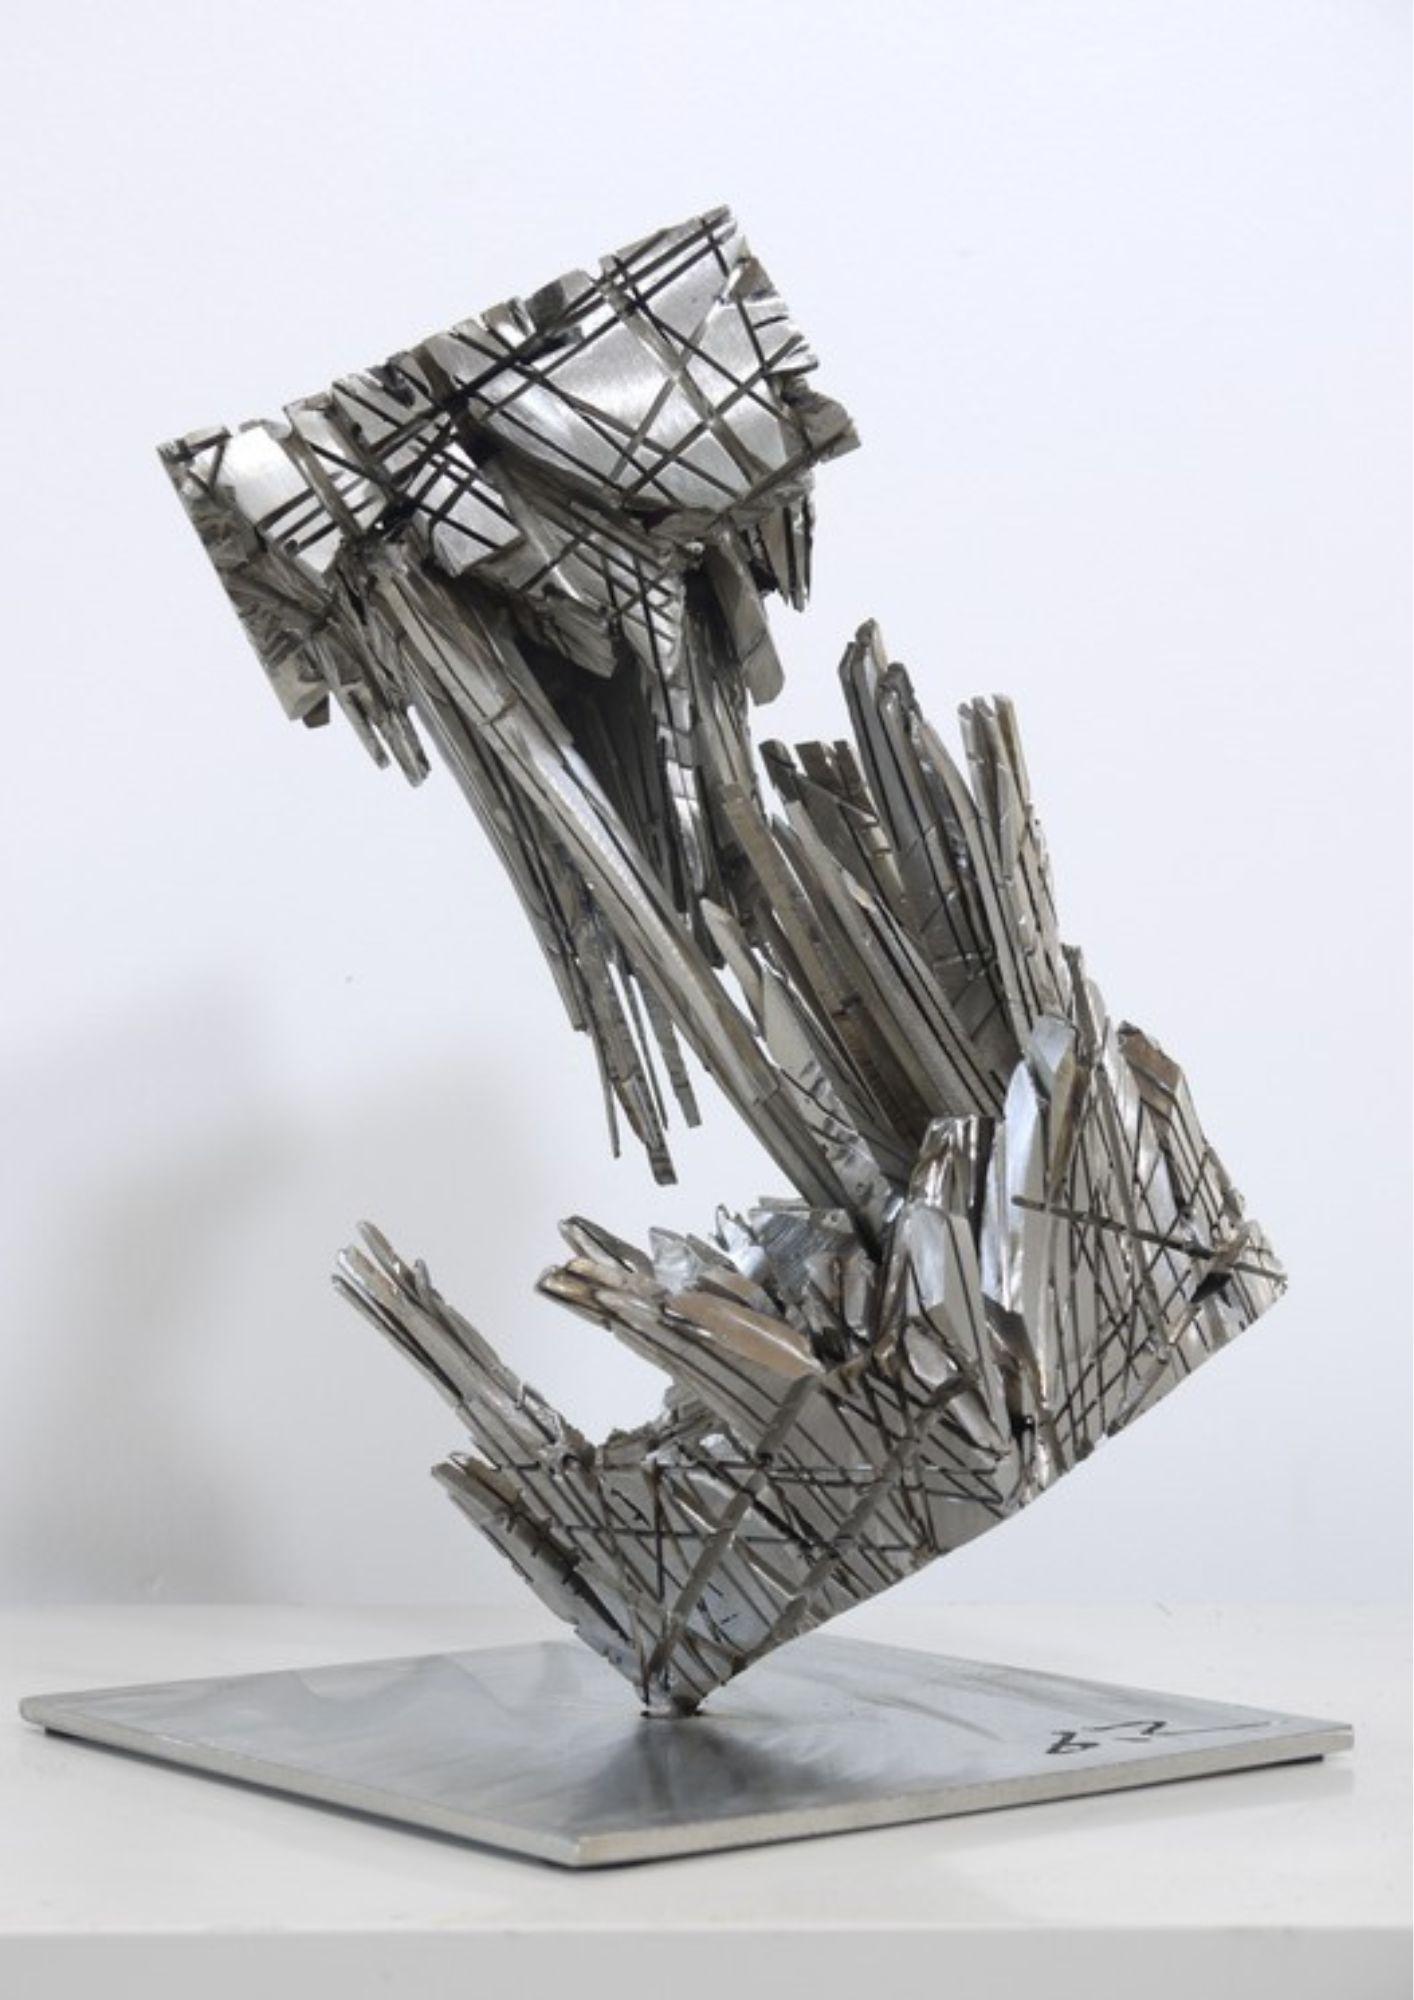 
La sculpture Spyrite 5 est une œuvre artistique inspirée par la transformation et la connexion. À l'origine, cette pièce est un cube, mais elle se réinvente en s'étirant et en s'étalant pour créer une vision dynamique et saisissante.

Le cube se